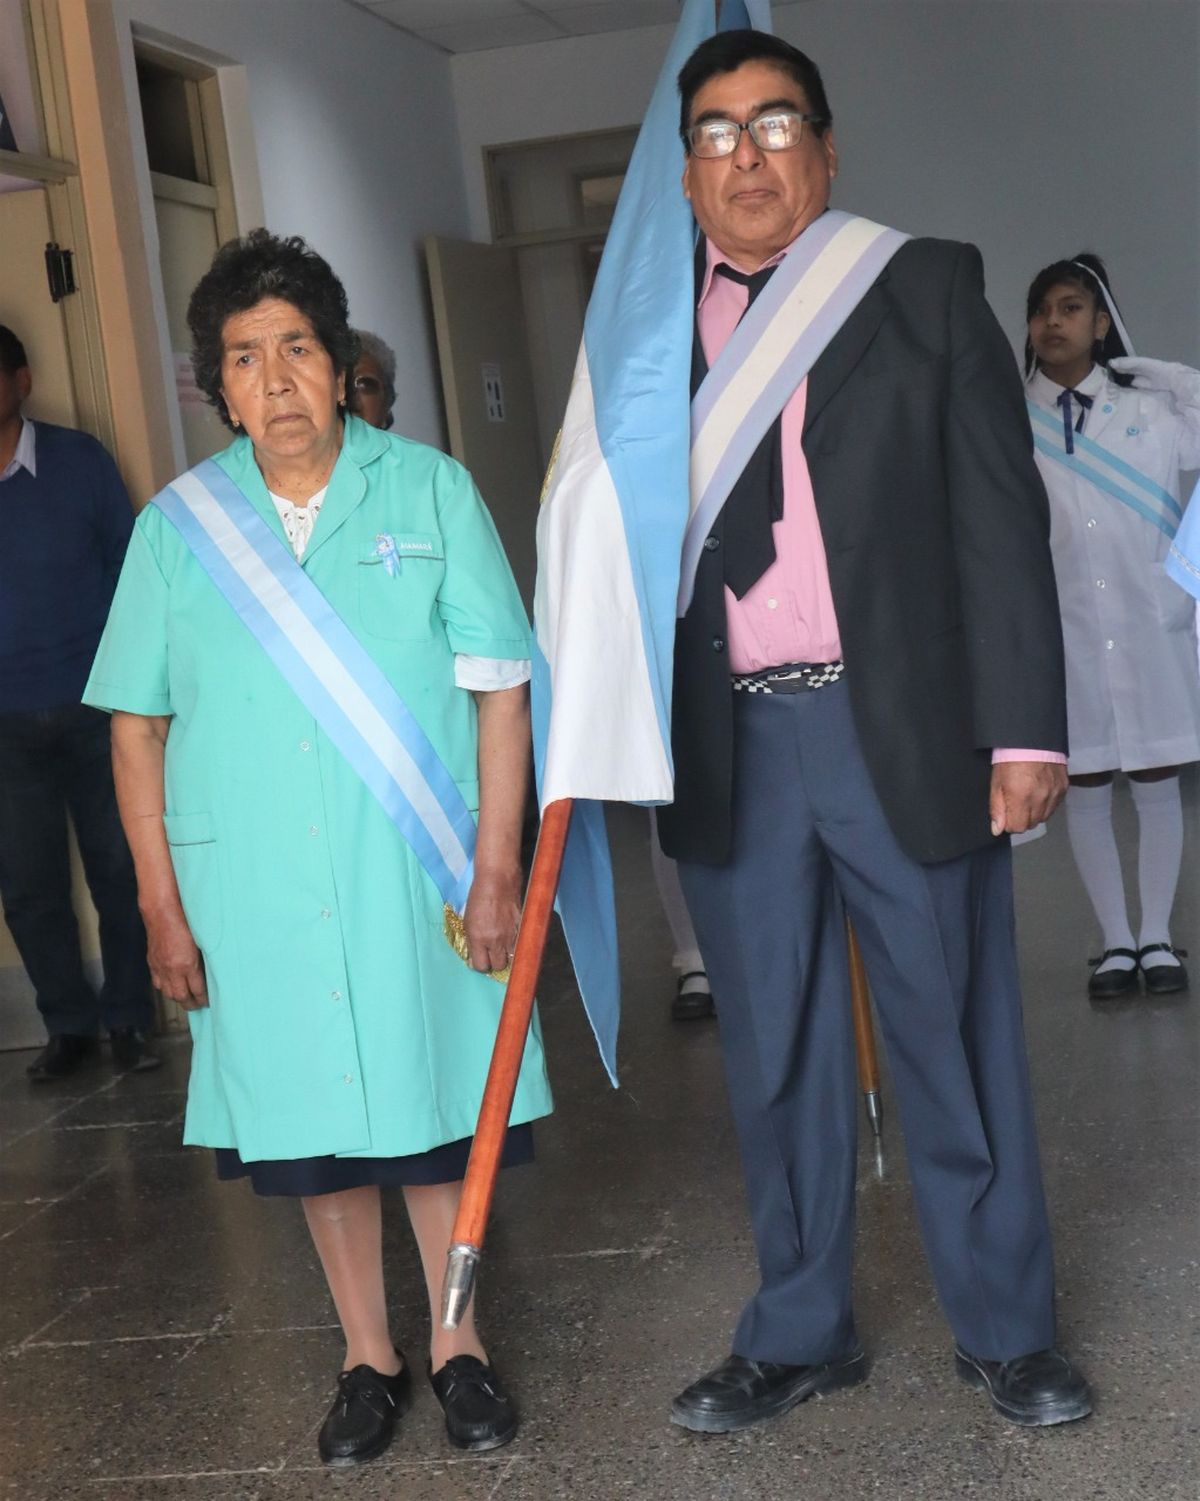 El Hospital de Maimará celebra 75 años